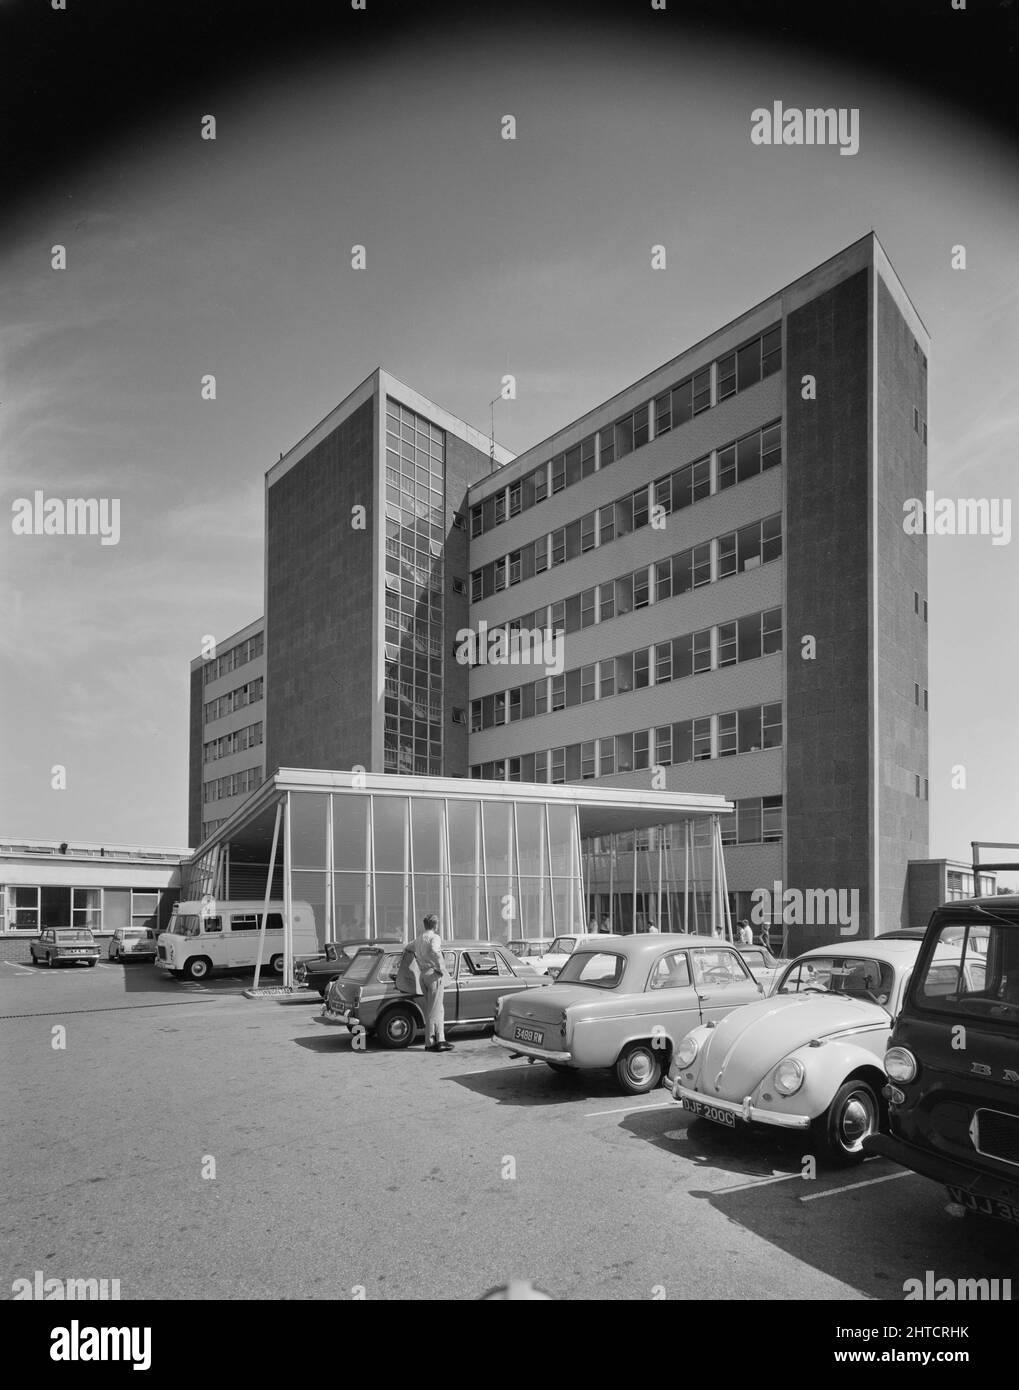 Walsgrave Hospital, Clifford Bridge Road, Walsgrave on Sowe, Coventry, West Midlands, 01/07/1969. L'esterno del blocco di maternità presso l'Ospedale Walsgrave, Coventry, che mostra l'ingresso principale e il baldacchino dell'ambulanza. Questa fotografia è riportata nel numero di ottobre 1969 di Team Spirit, la newsletter della Laing Company. Foto Stock